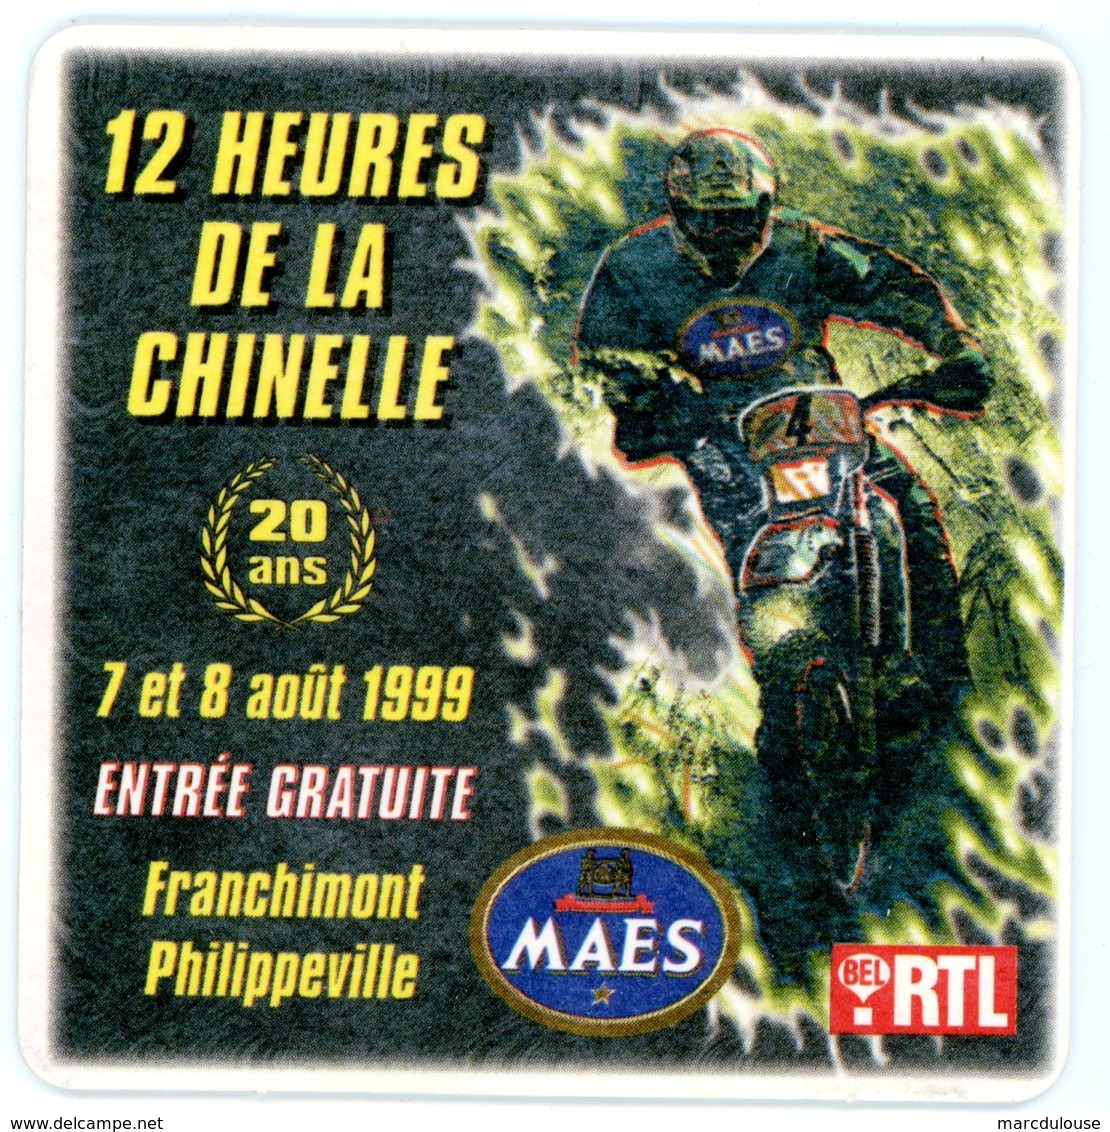 Belgium. 12 Heures De La Chinelle. 20 Ans. 7 Et 8 Août 1999. Franchimont. Philippeville. Maes. Bel RTL. Moto. - Portavasos